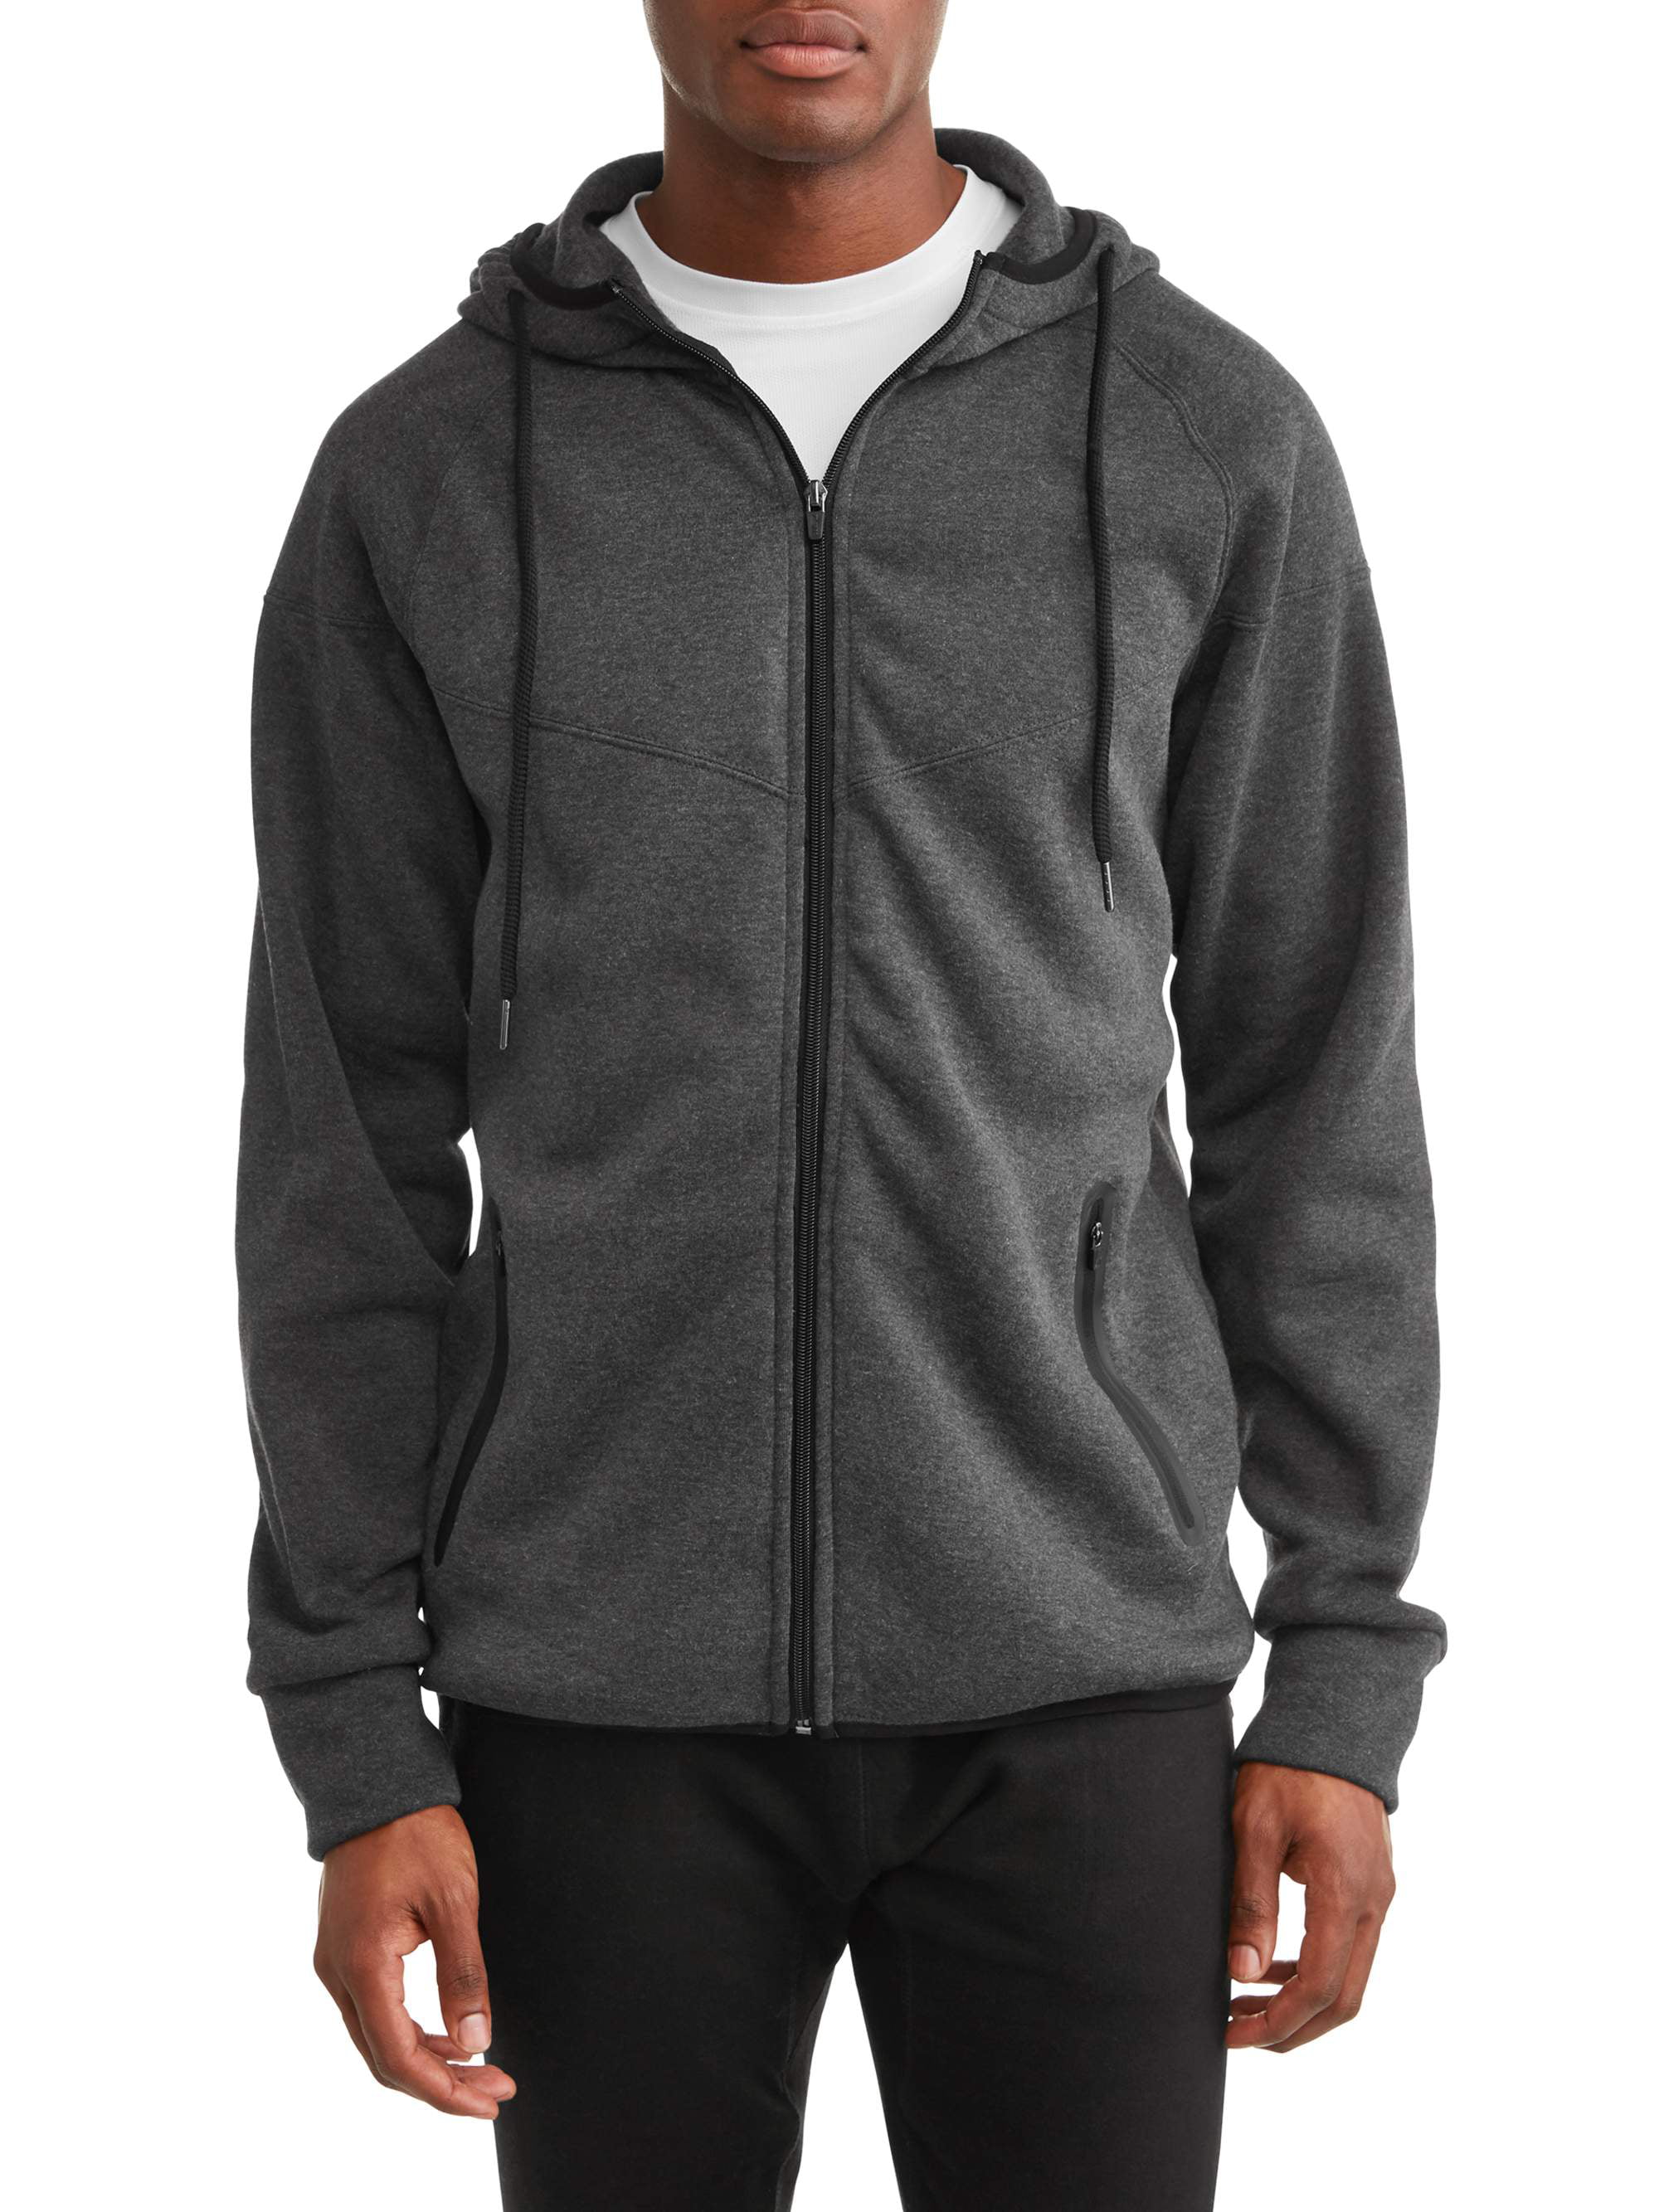 RBX Men's Fleece Hooded Full Zip Jacket - Walmart.com